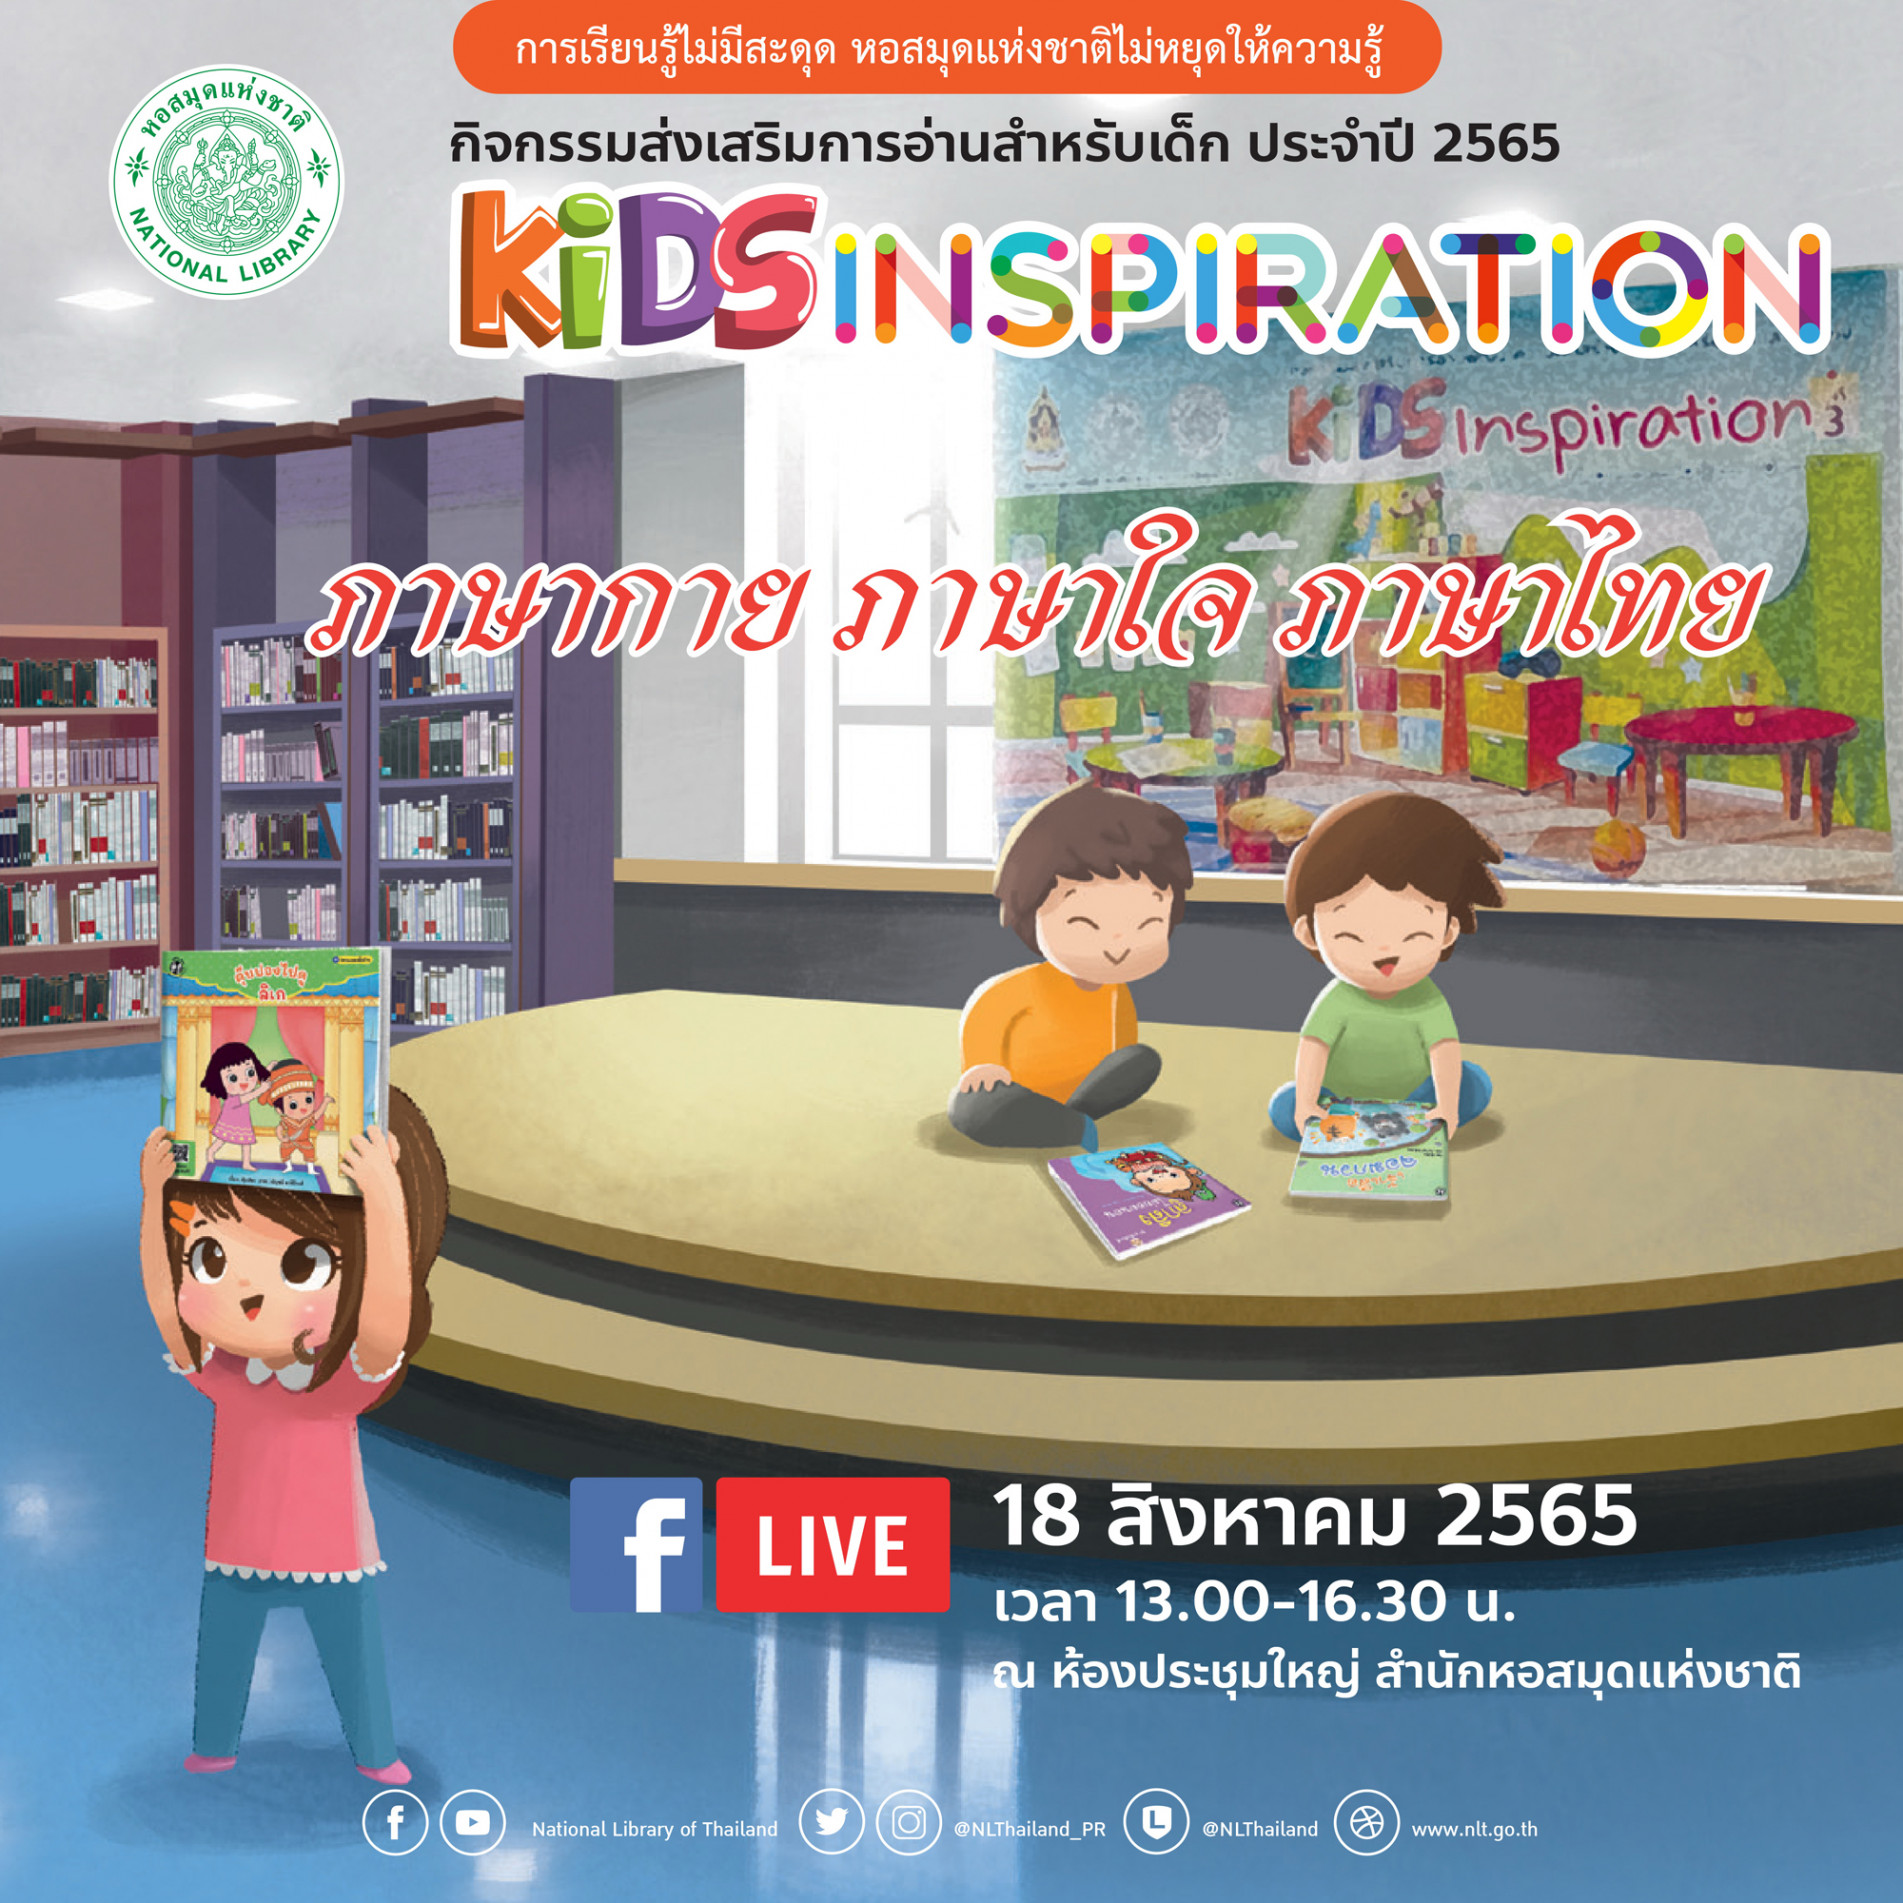 ขอเชิญรับชม Facebook Live กิจกรรมส่งเสริมการอ่านสำหรับเด็ก Kids Inspiration ครั้งที่ ๕ เรื่อง “ภาษากาย ภาษาใจ ภาษาไทย”